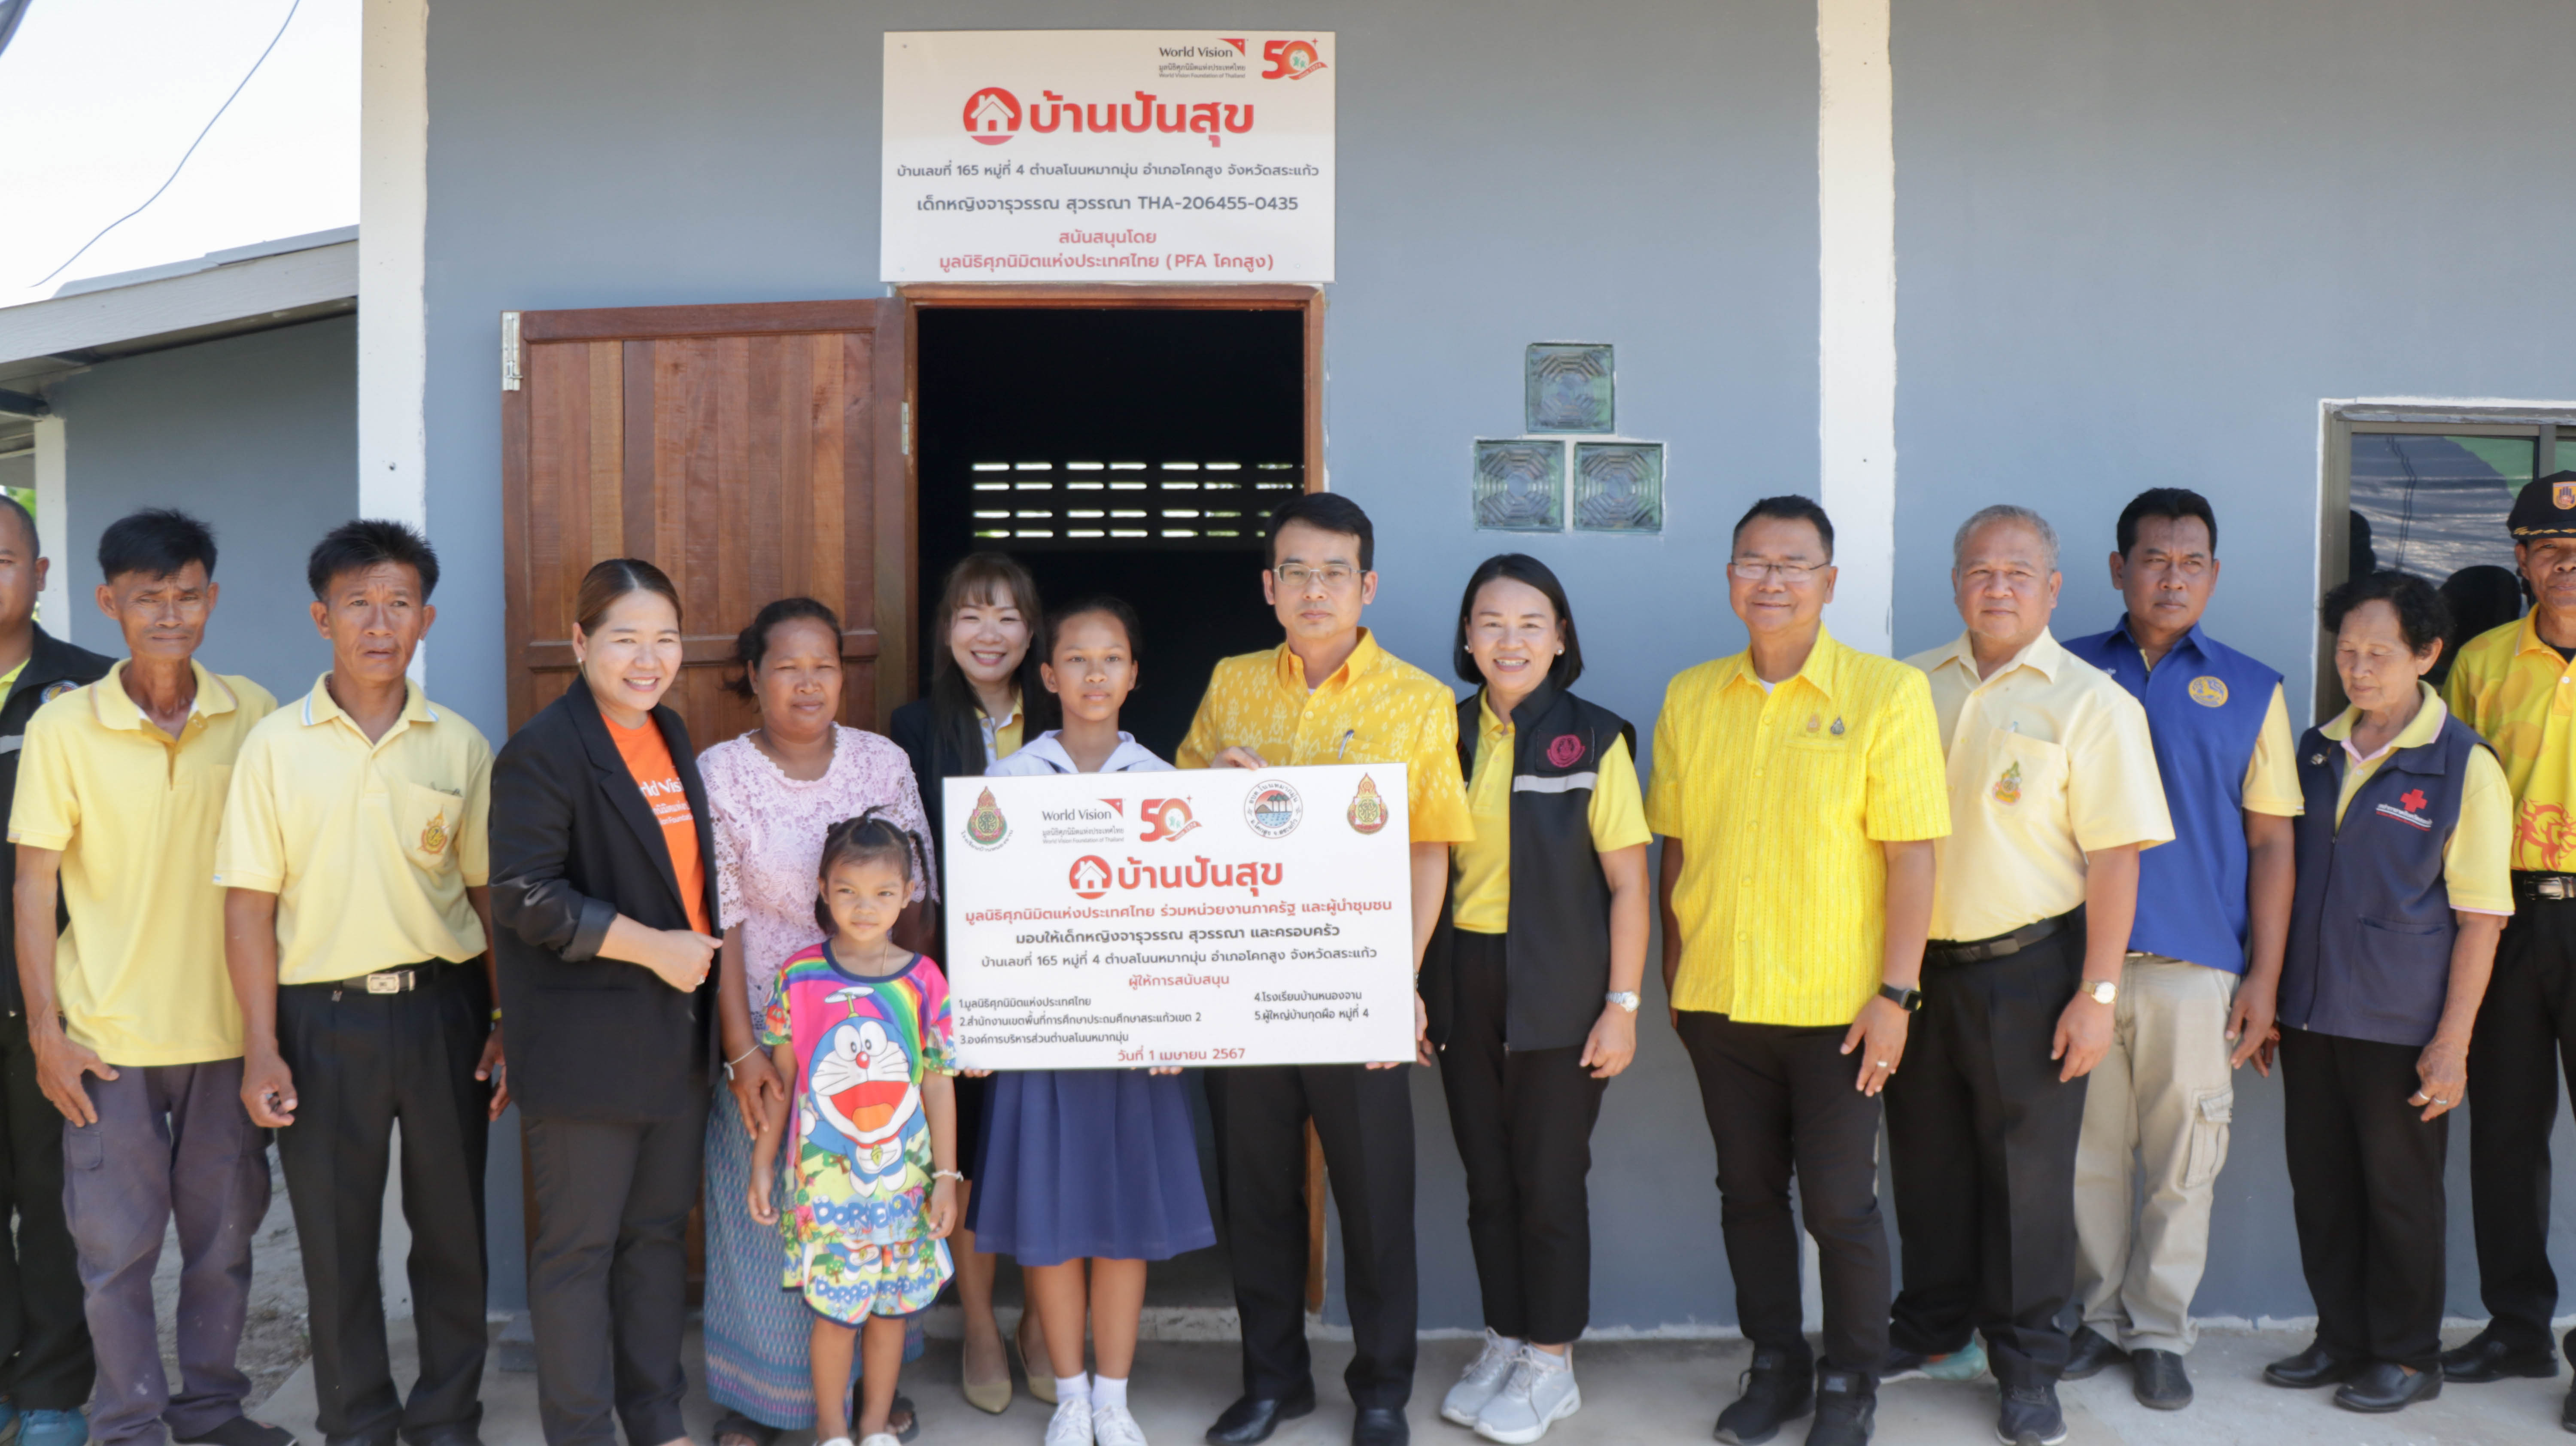 มูลนิธิศุภนิมิตแห่งประเทศไทยก่อสร้างบ้านให้กับเด็กเปราะบางโครงการ "บ้านปันสุข" ในพื้นที่จังหวัดสระแก้ว